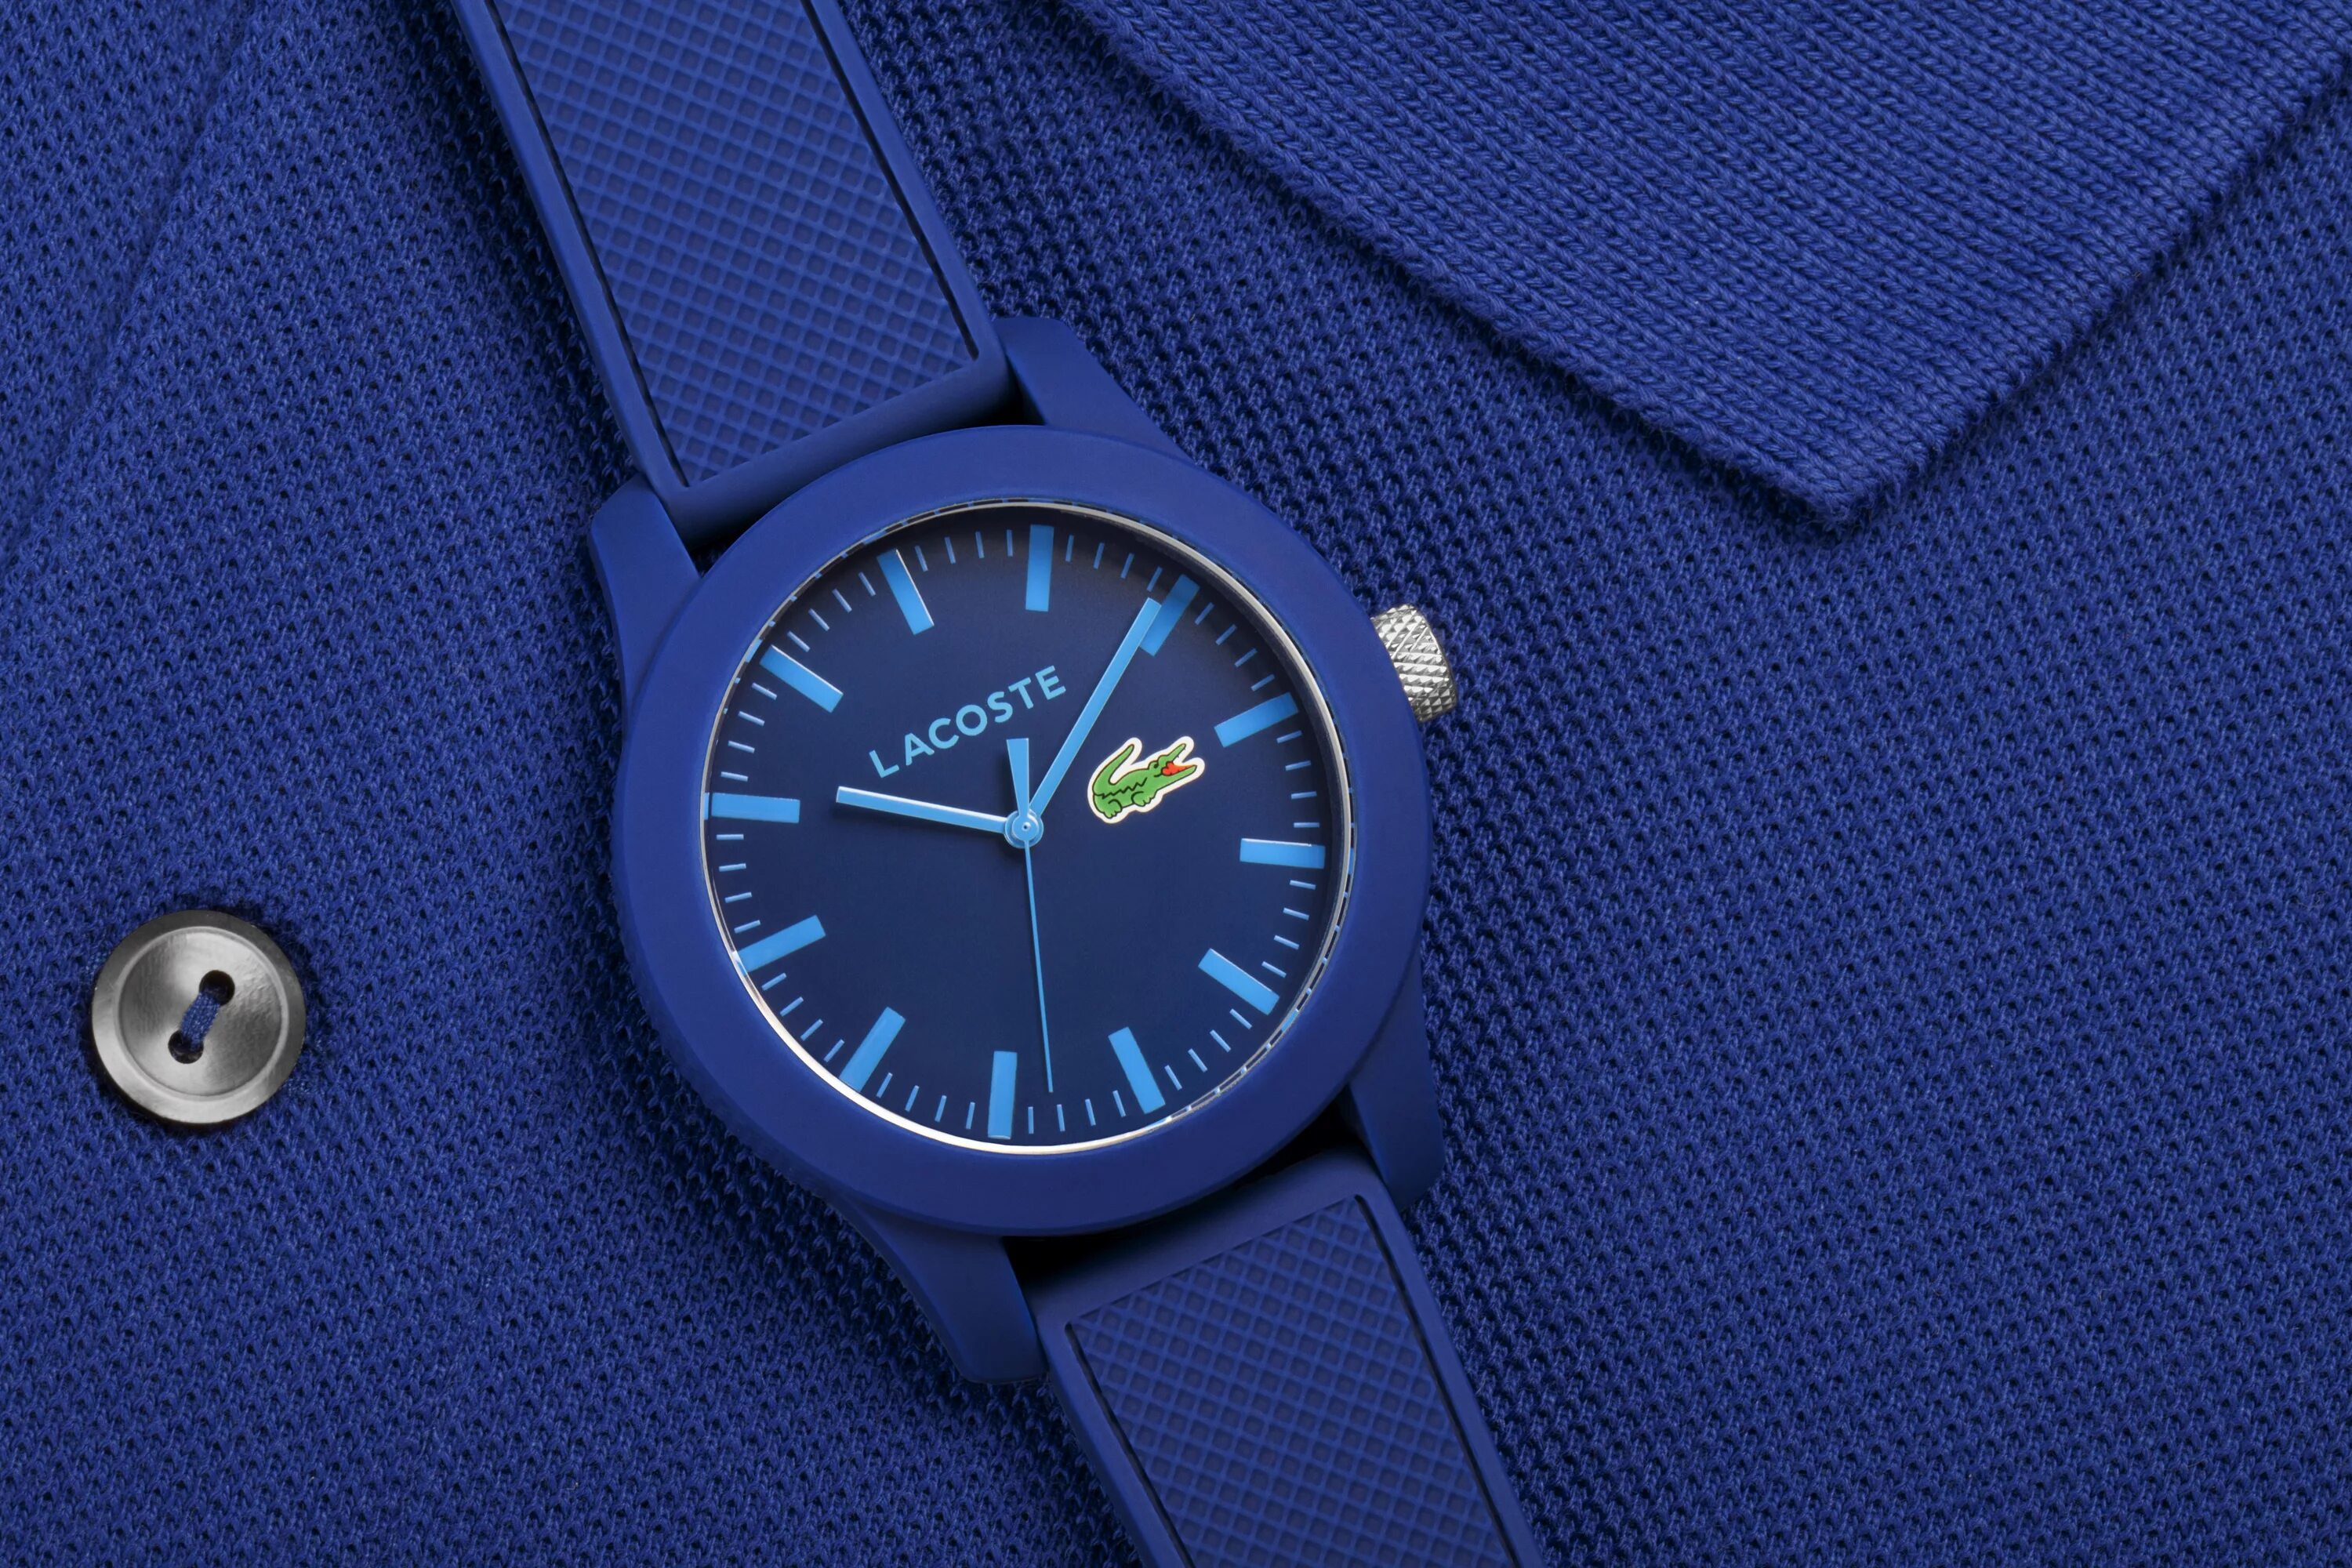 Синий час. Часы лакост мужские синие. Лакост 1212 Блу. Часы Lacoste мужские синие. Наручные часы на синем фоне.